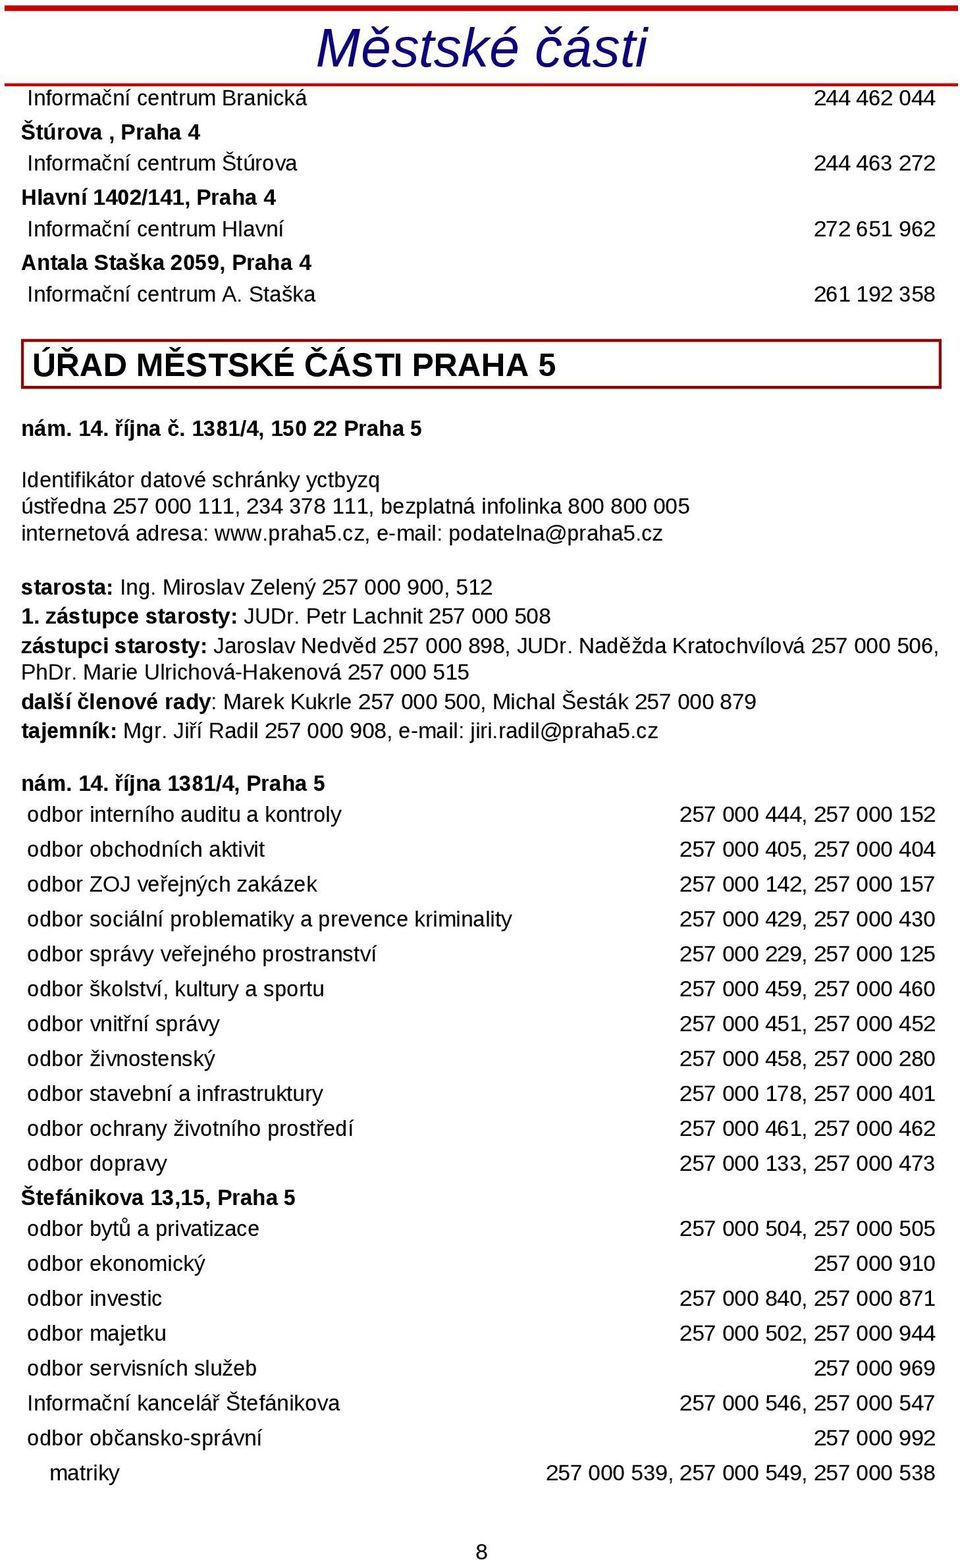 1381/4, 150 22 Praha 5 Identifikátor datové schránky yctbyzq ústředna 257 000 111, 234 378 111, bezplatná infolinka 800 800 005 internetová adresa: www.praha5.cz, e-mail: podatelna@praha5.